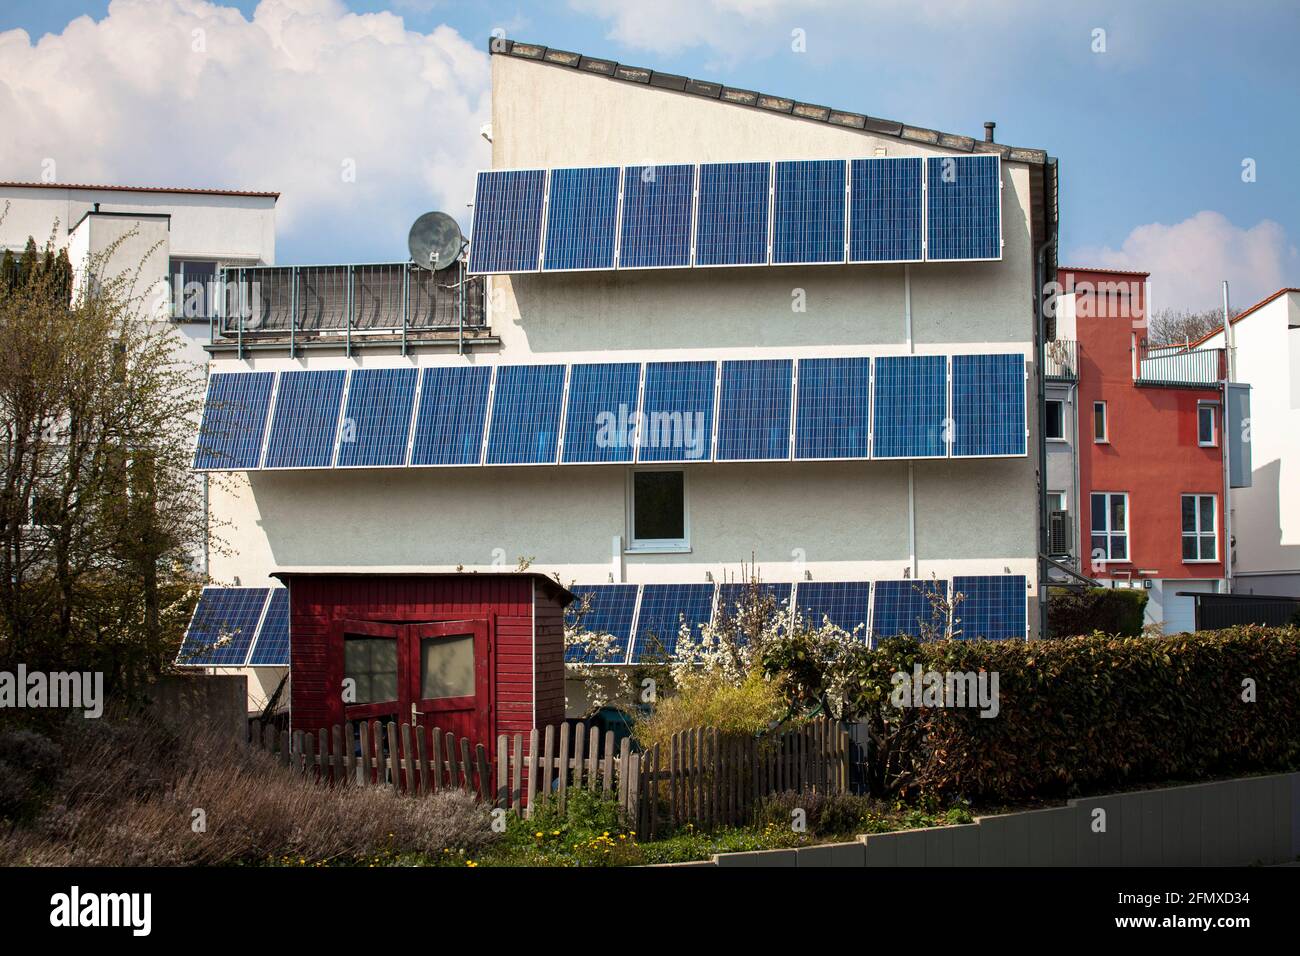 Photovoltaikmodule, Solarmodule auf einem Haus im Landkreis Eichlinghofen, Dortmund, Nordrhein-Westfalen, Deutschland. Photovoltaikanlage, Solarmodul A Stockfoto